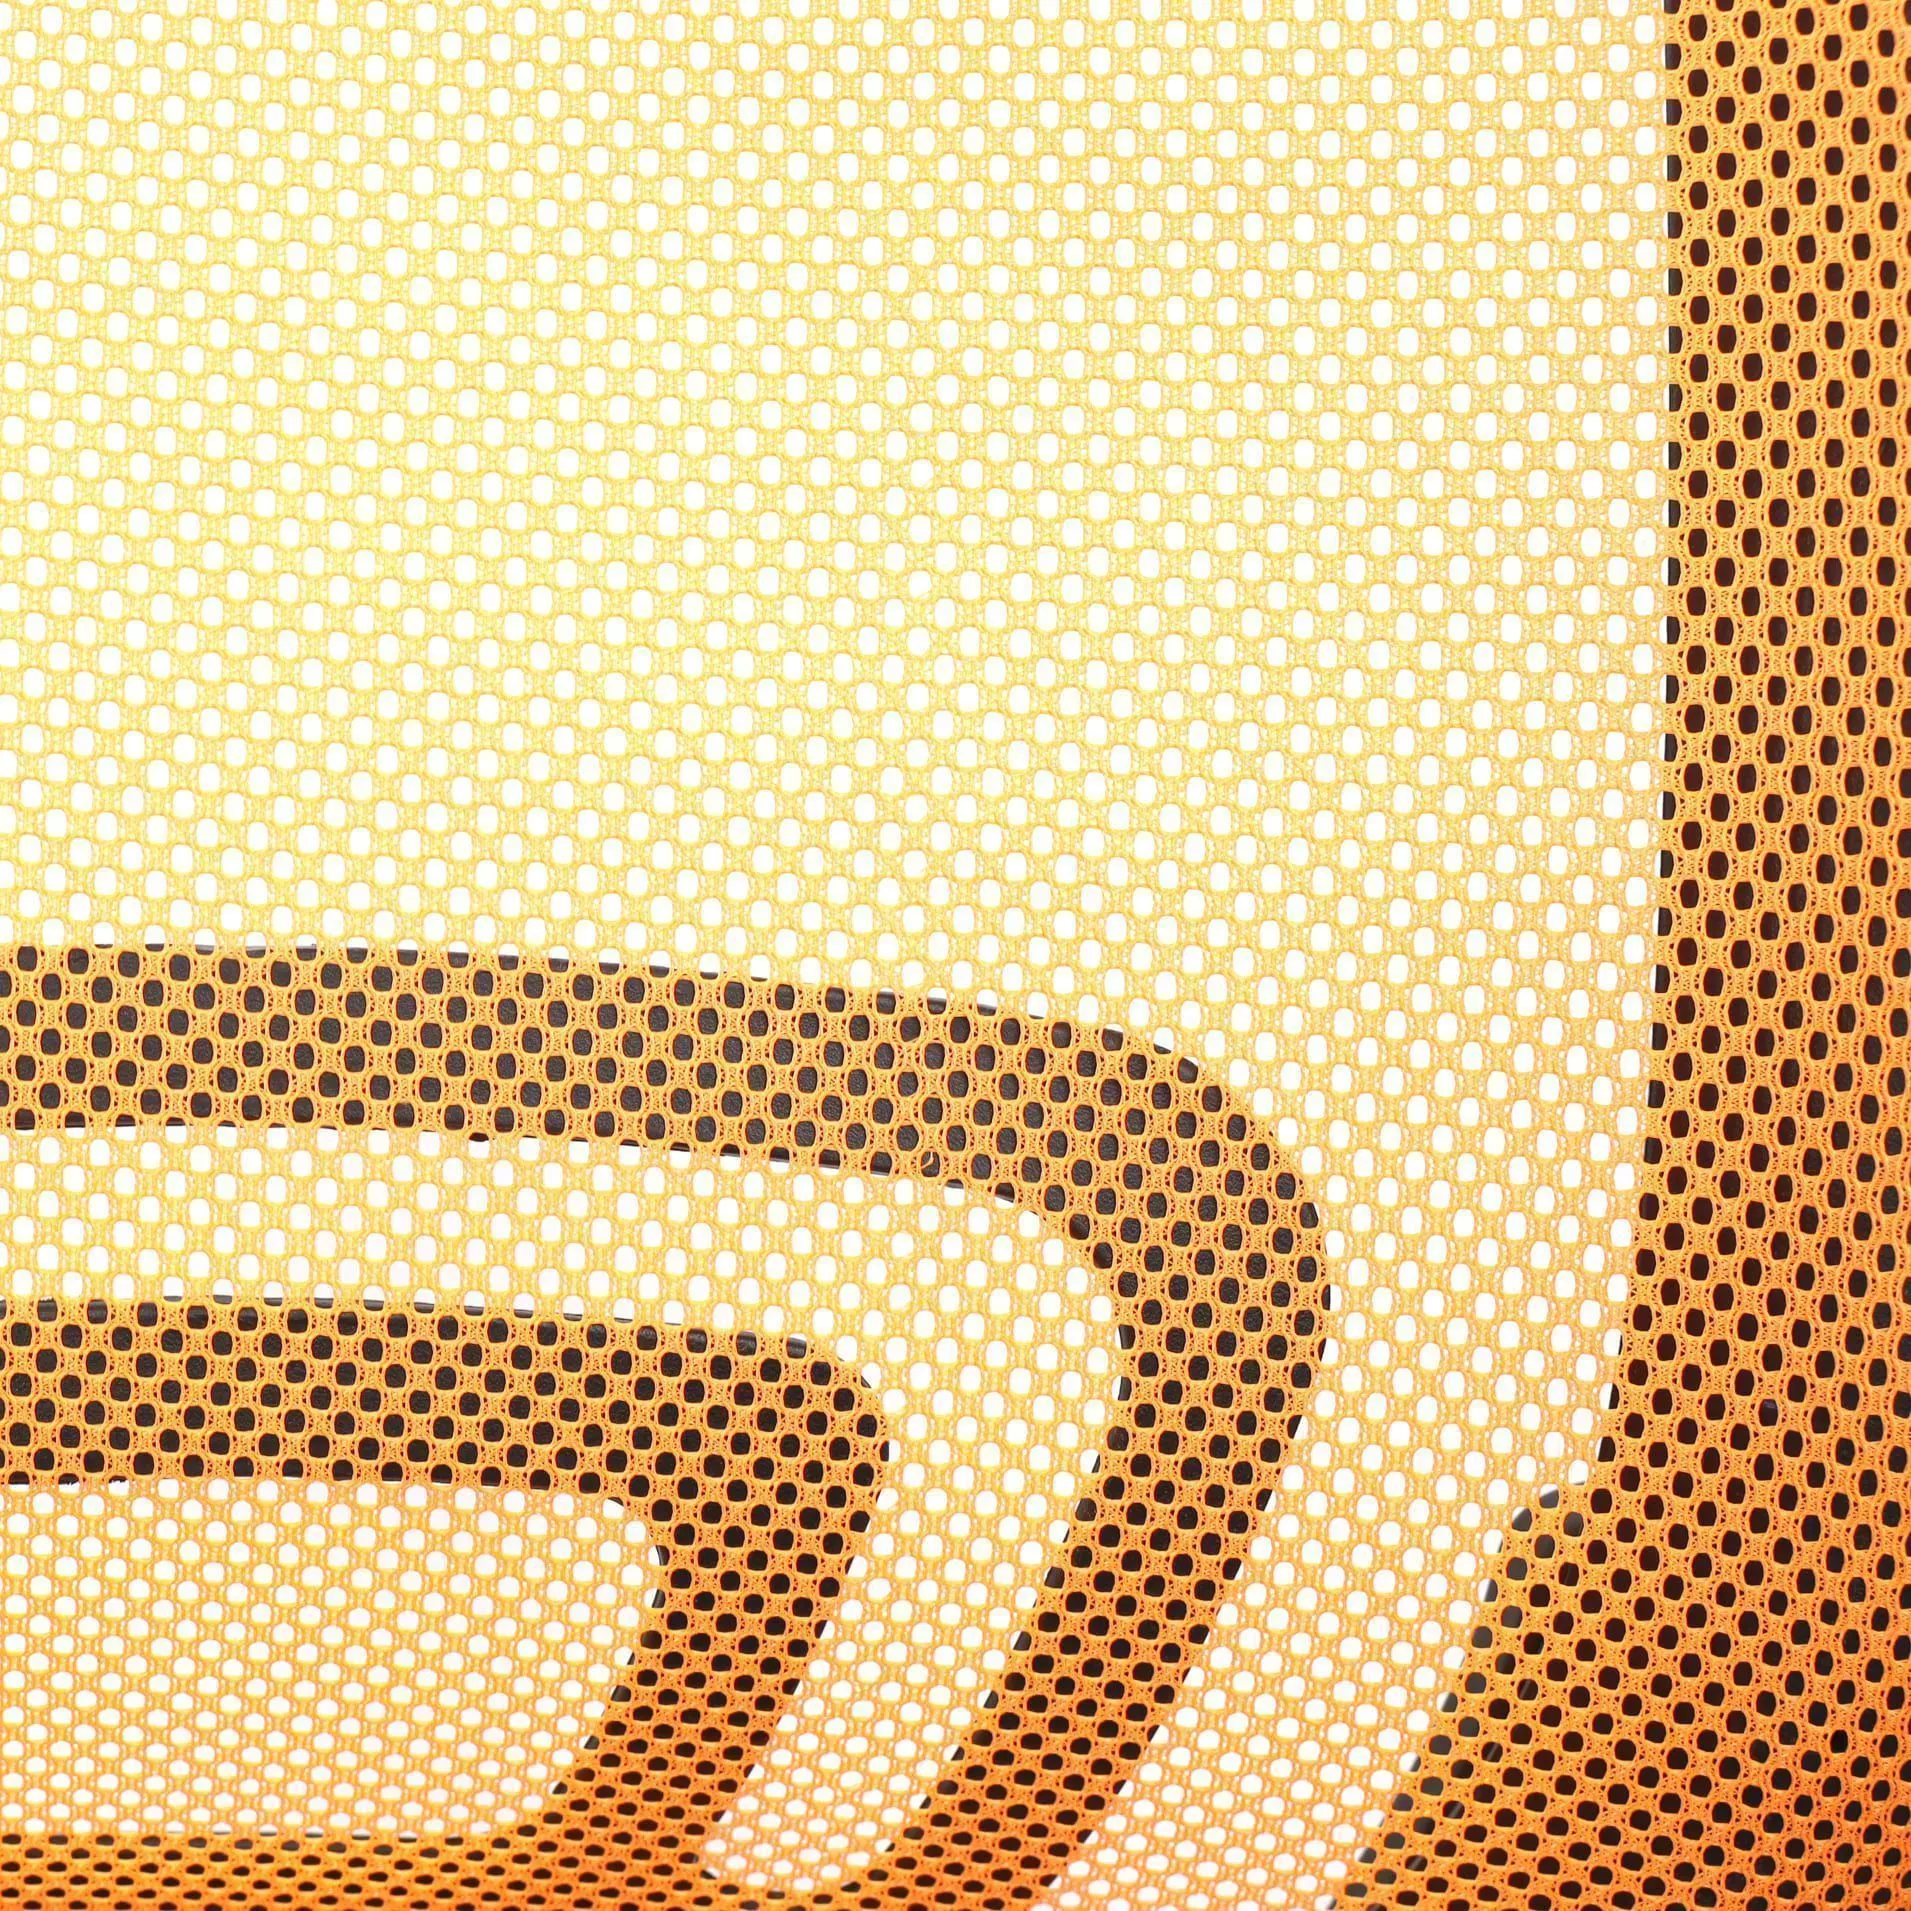 Кресло поворотное Ricci New оранжевый сетка 80012